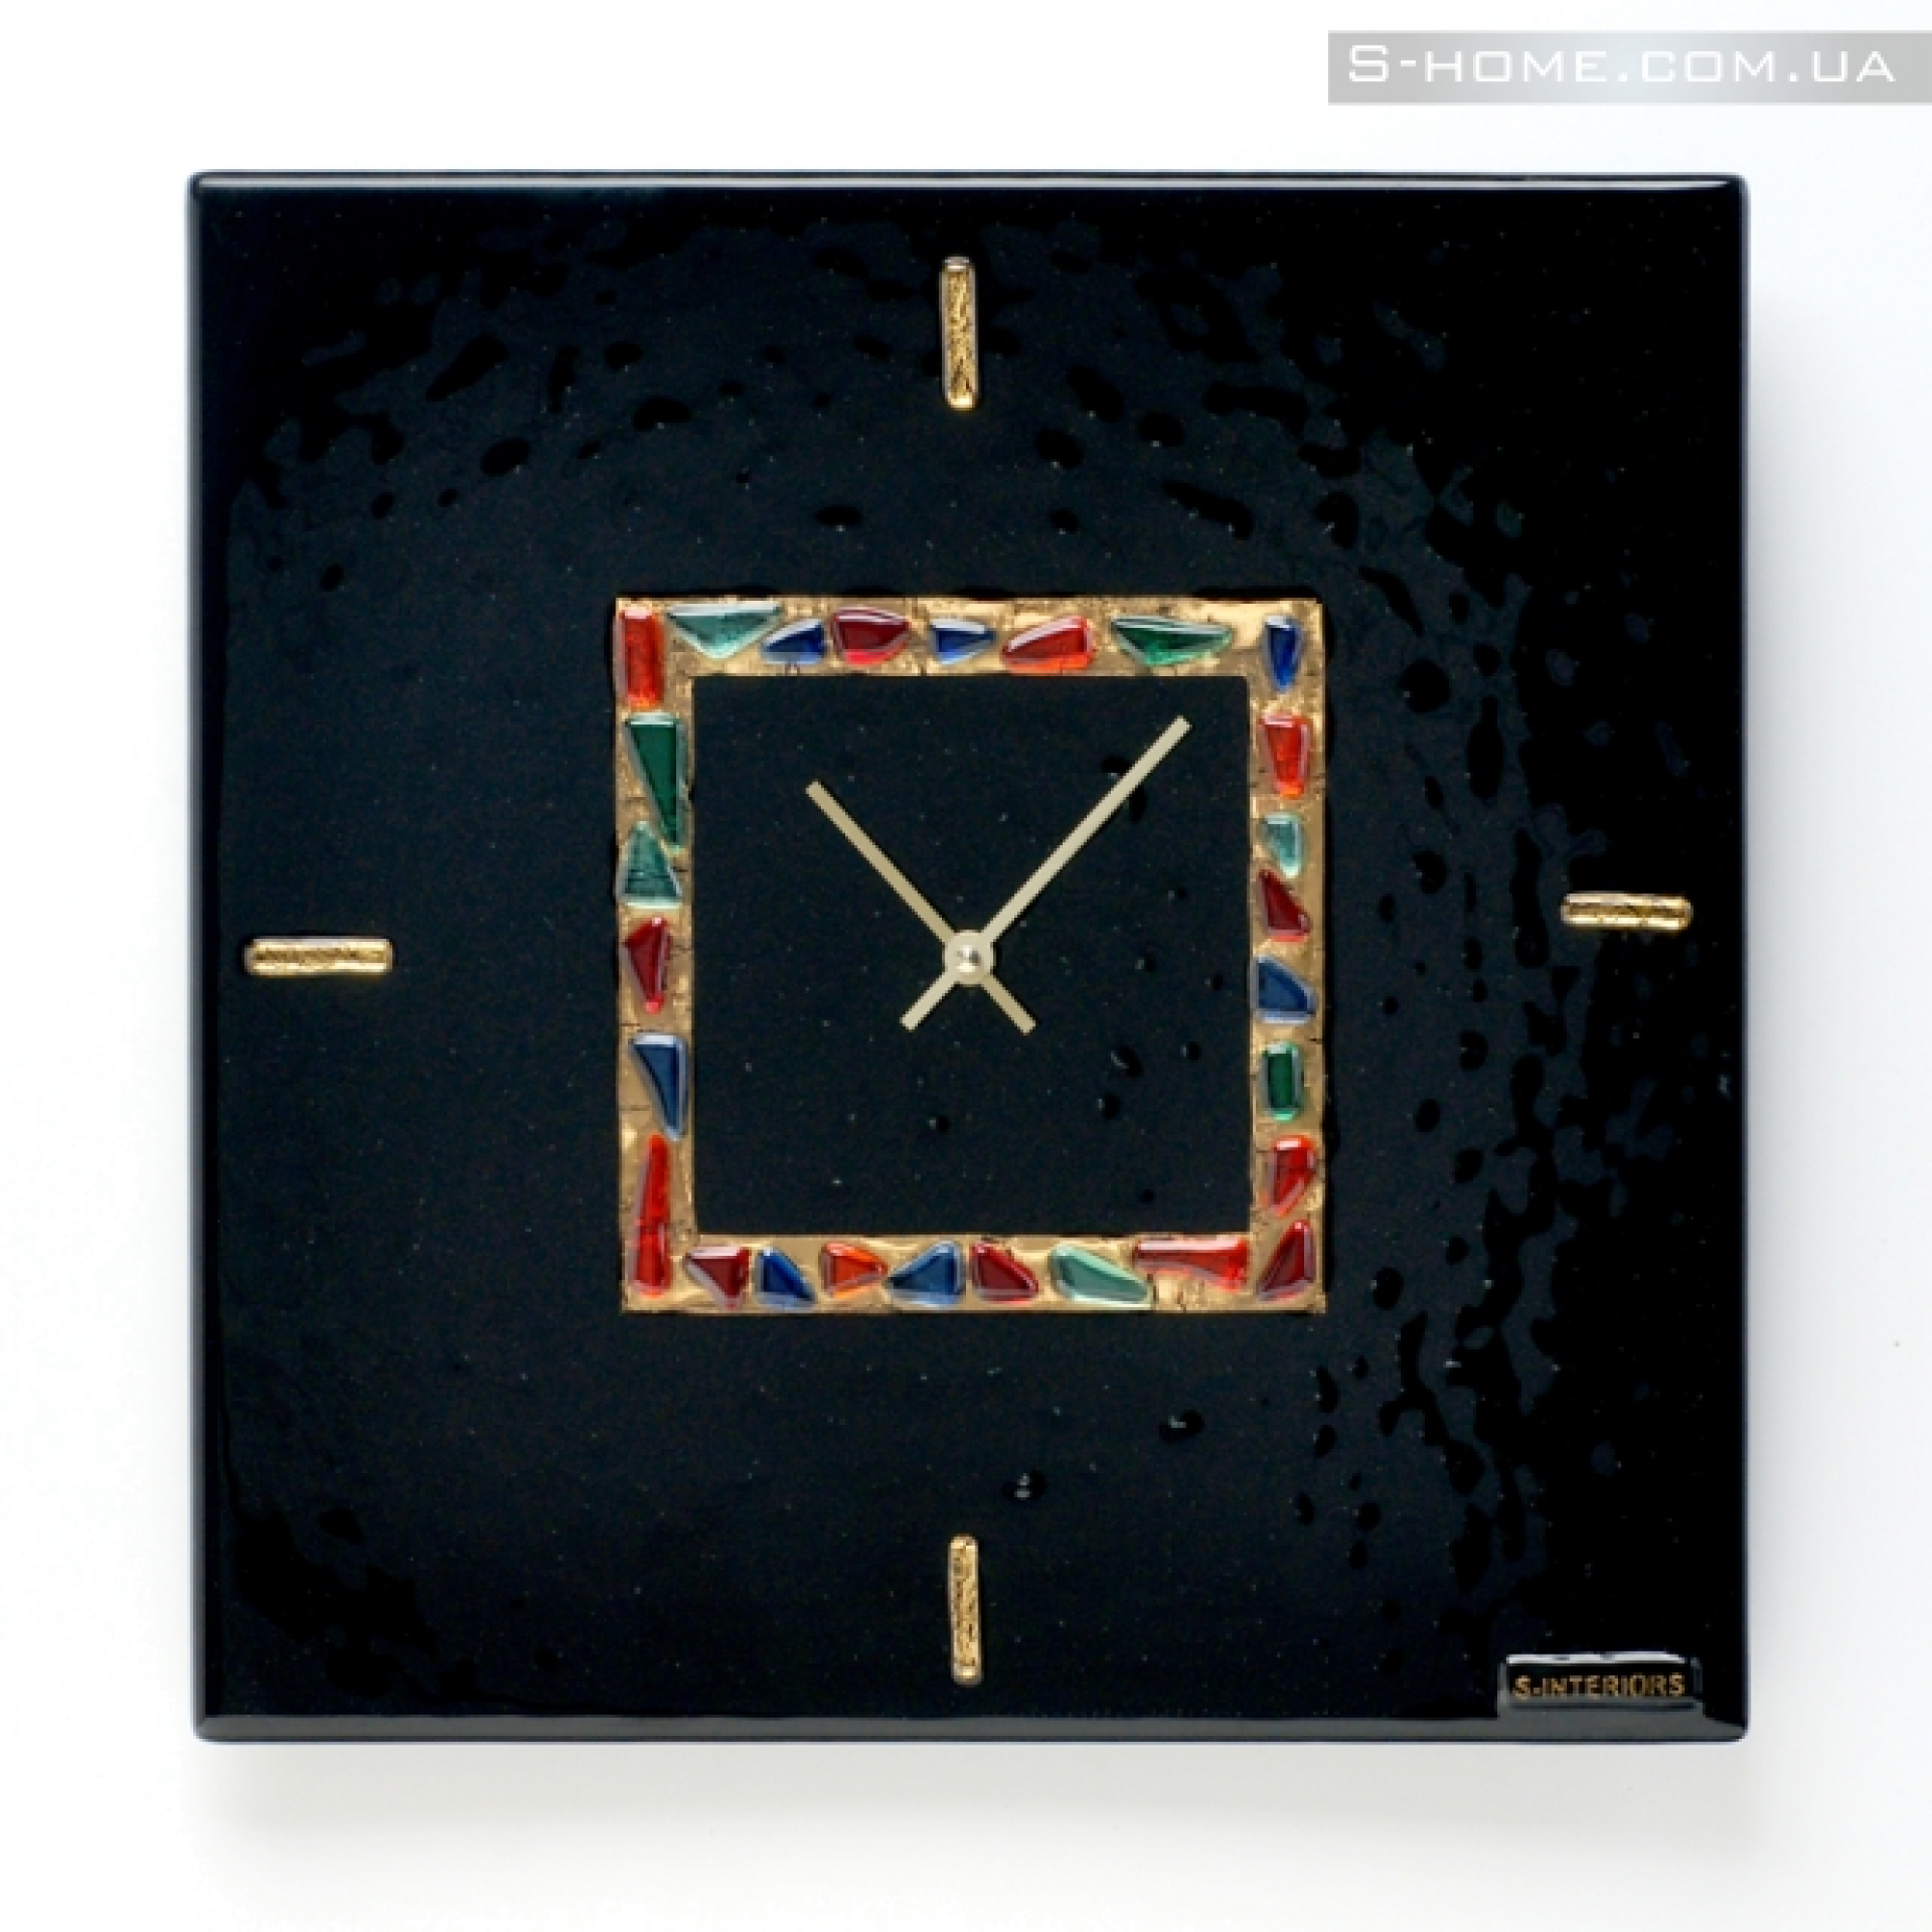 Дизайнерський настінний годинник з муранського скла S-Interiors  Antonio Сomplimento  2